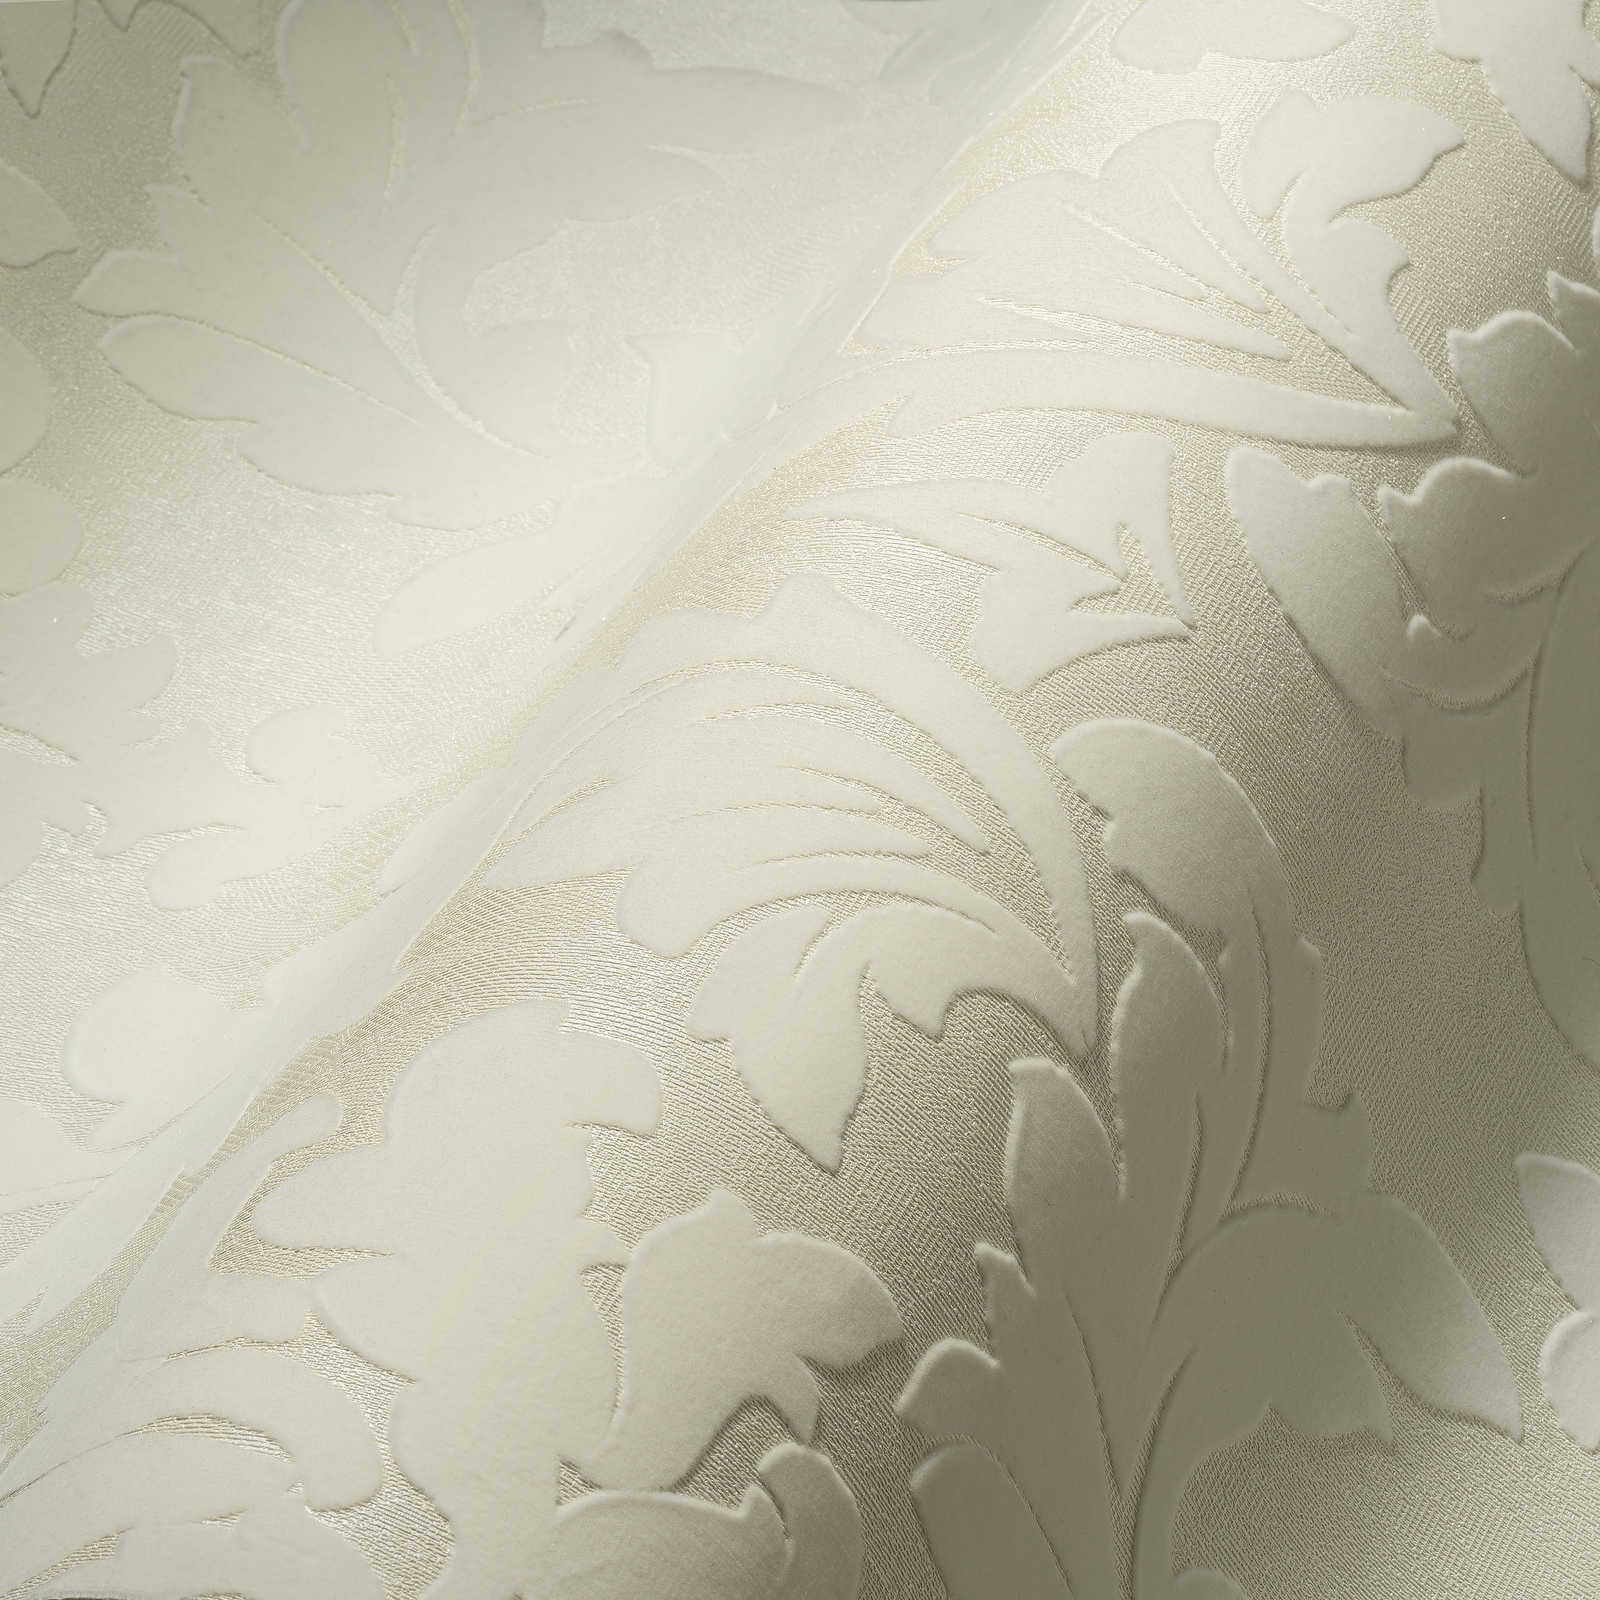             Barok behang met metaaleffect & structuurdesign - crème
        